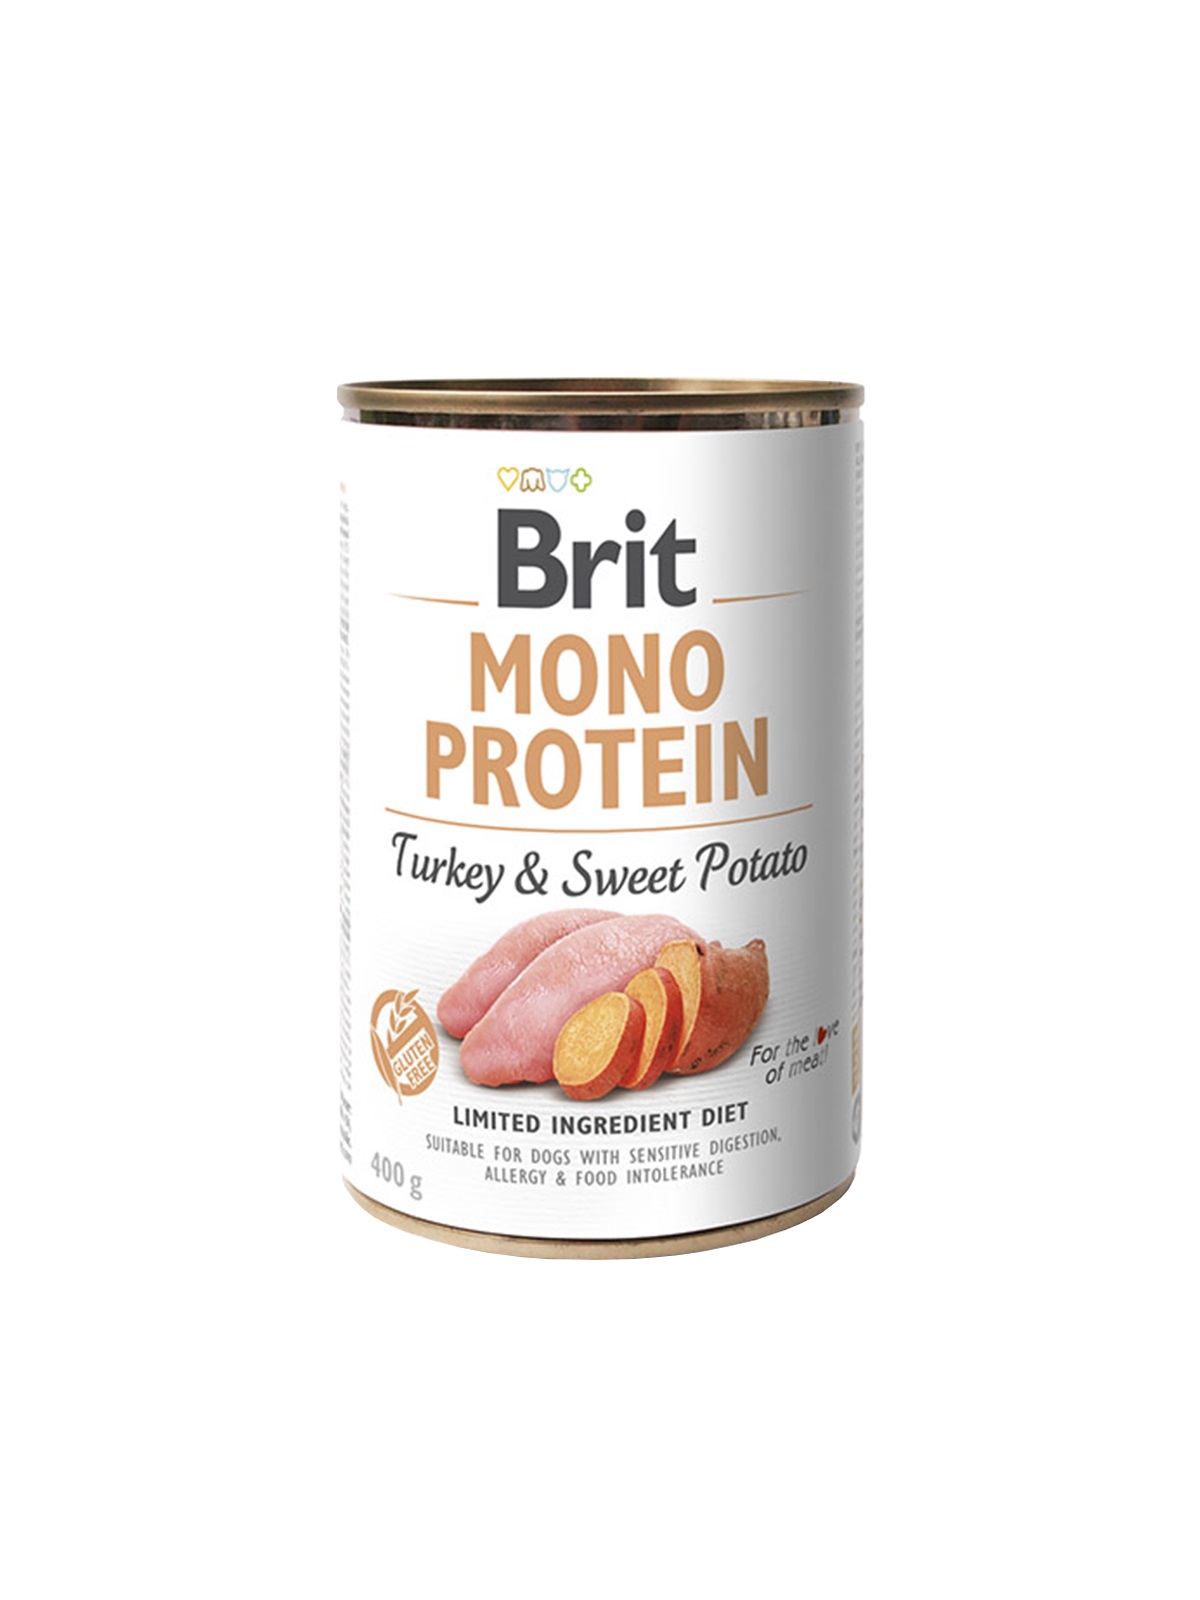 Brit Mono Protein Turkey & Sweet Potato...